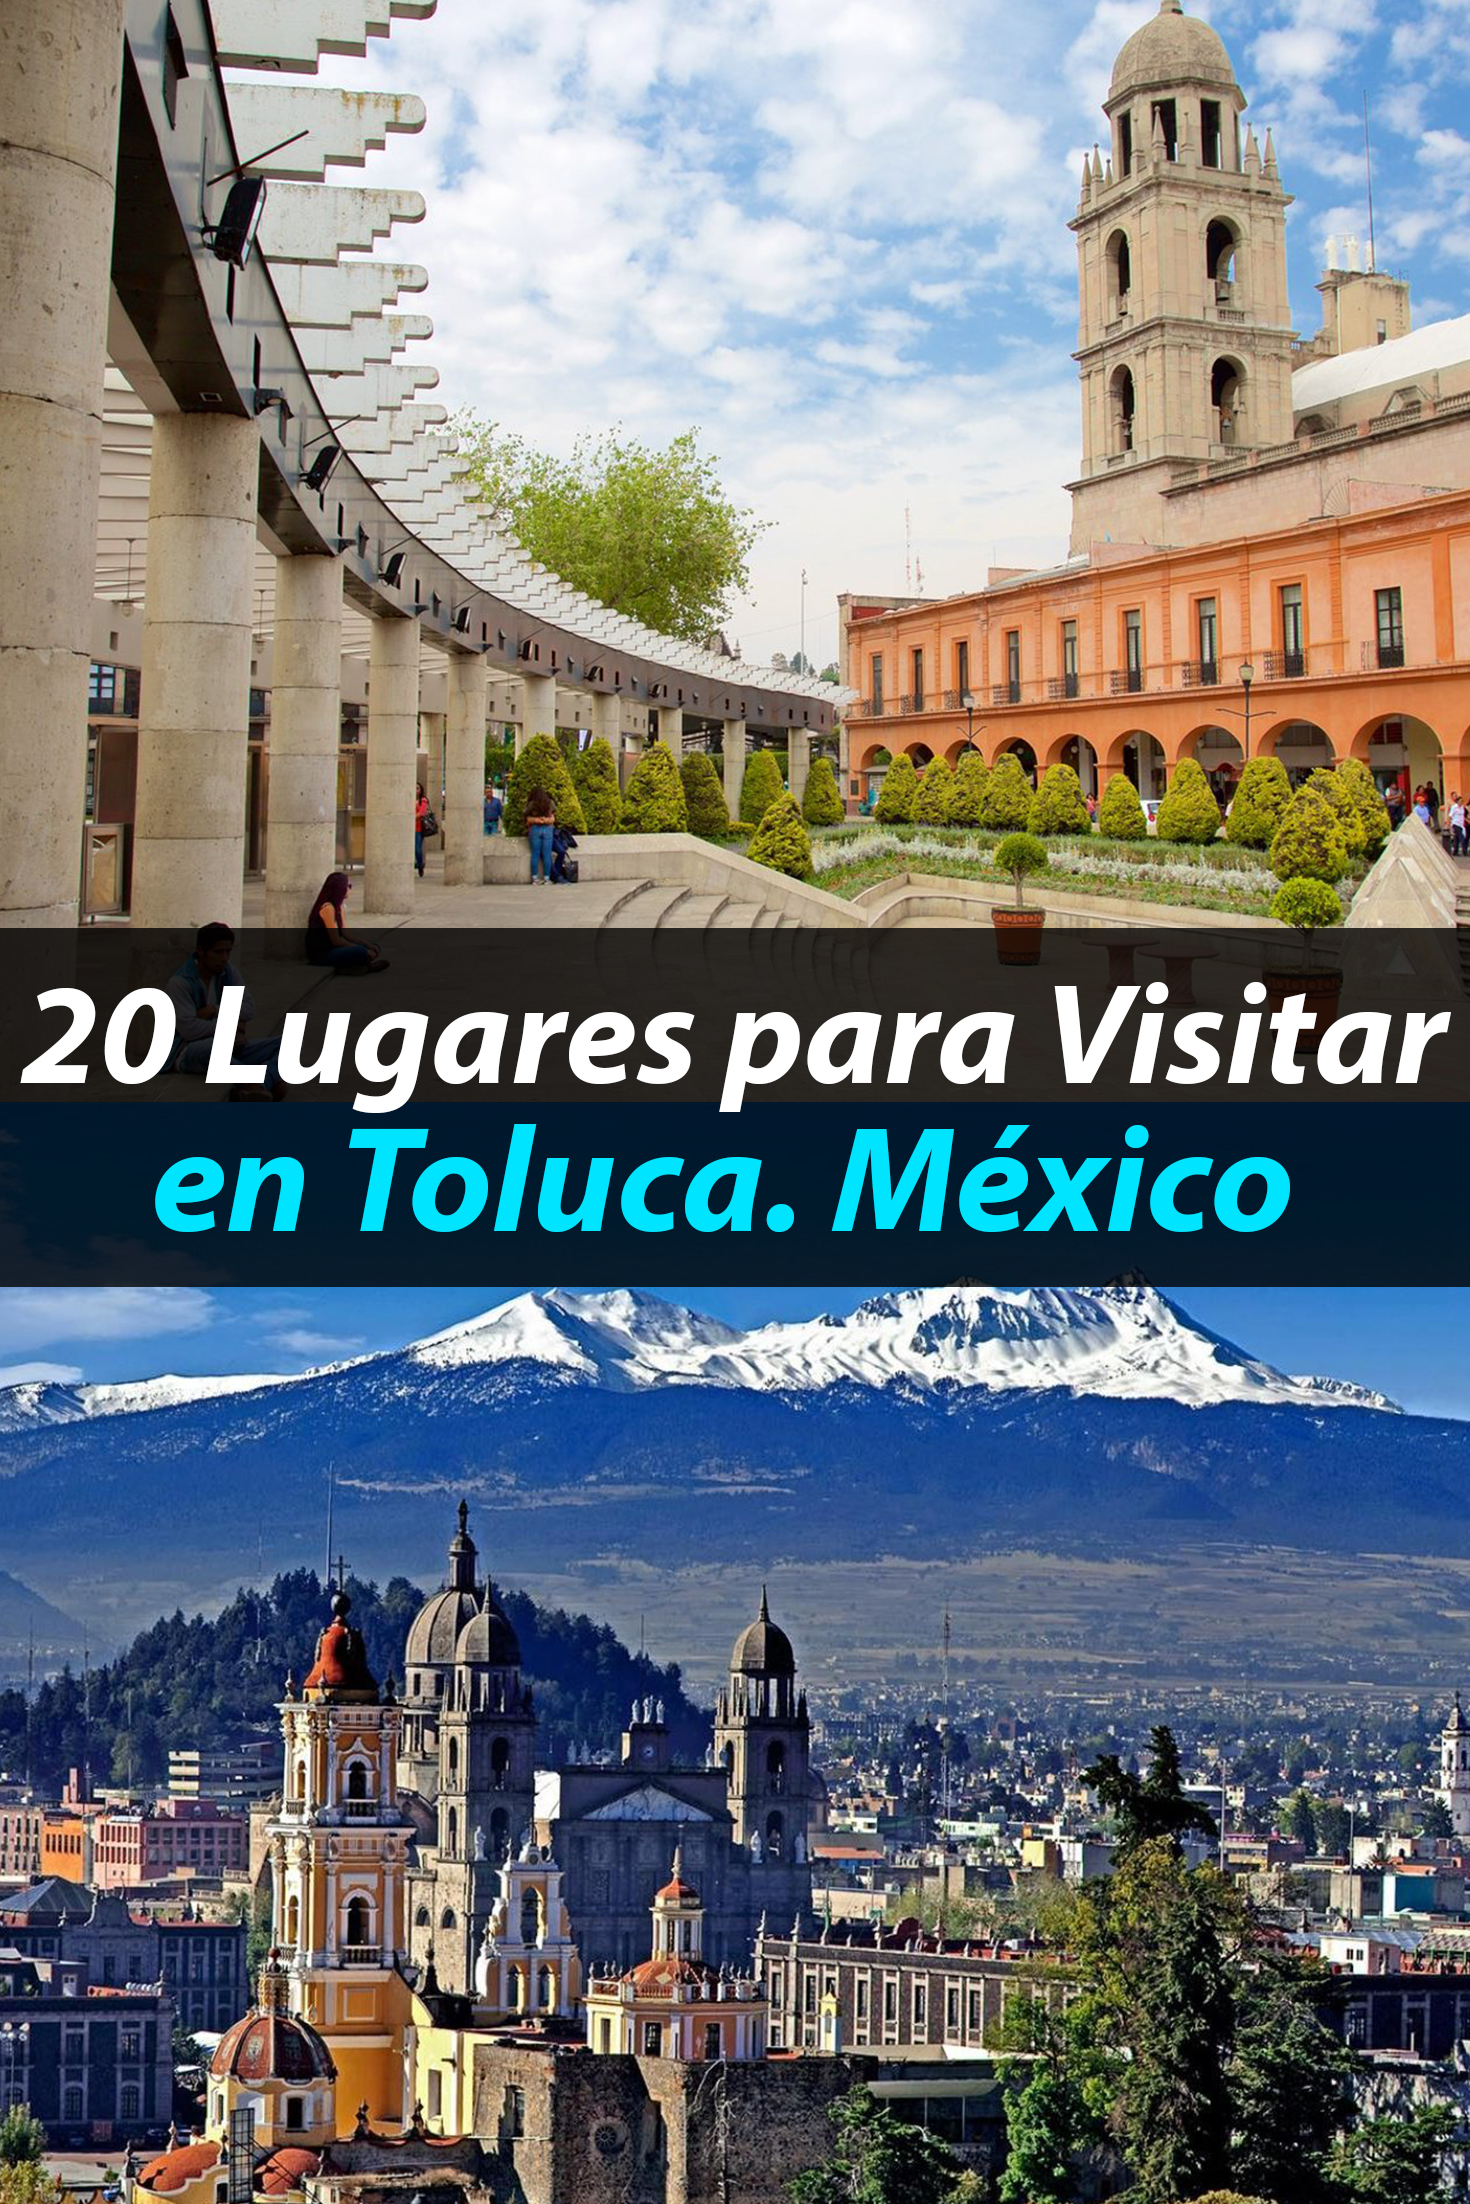 ¿Qué hay para visitar en Toluca